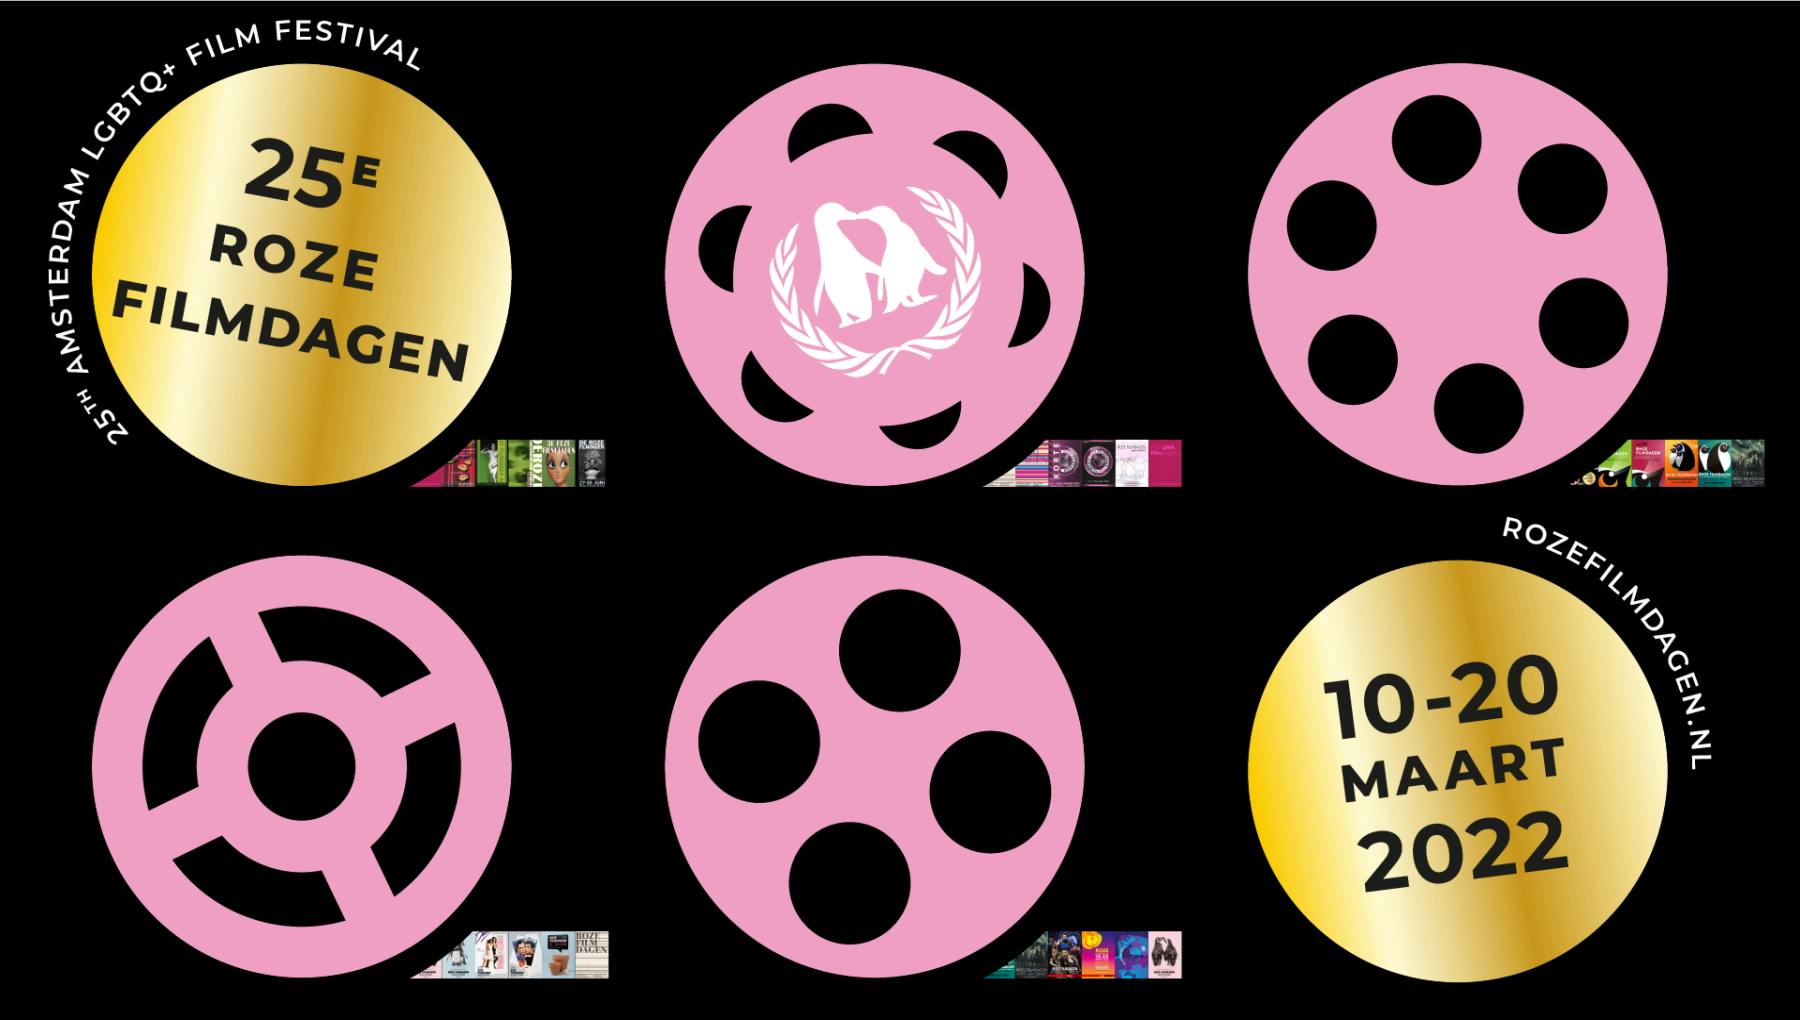 Roze Filmdagen (Pink Film Days)